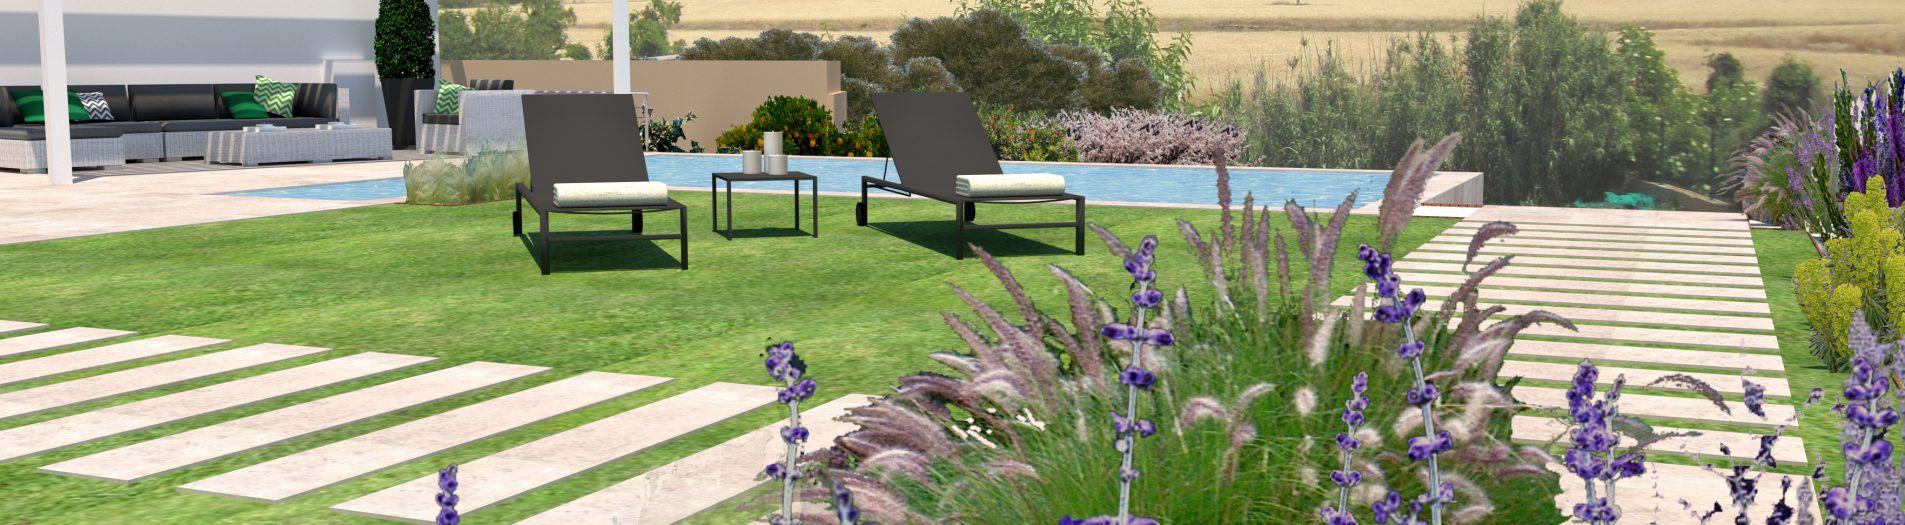 Diseño de jardín y piscina en la Segarra